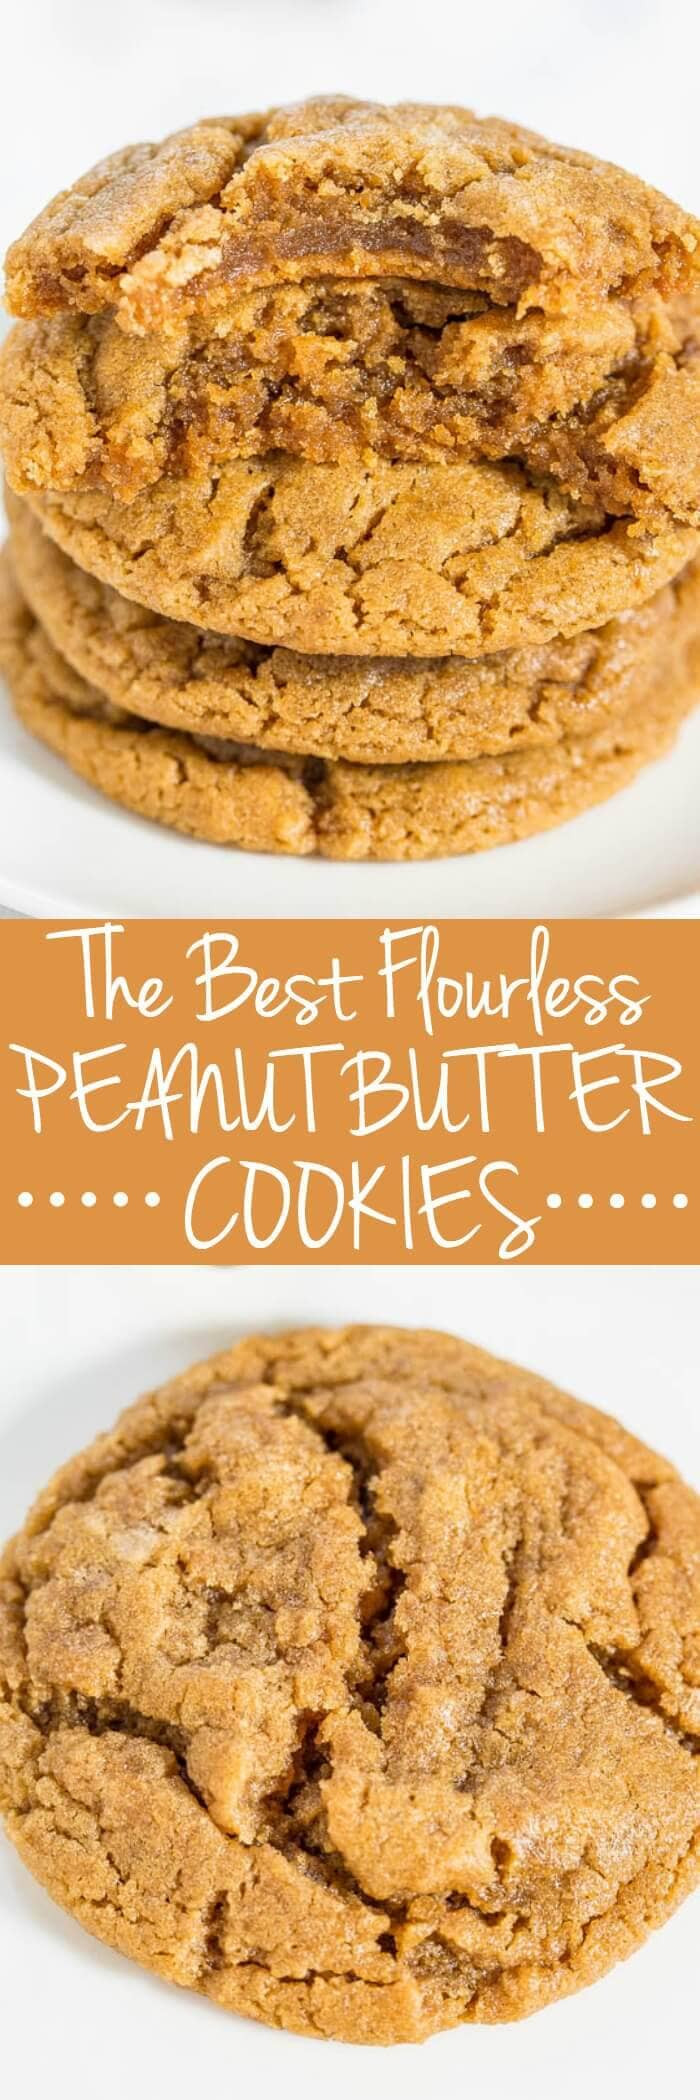 Flourless Peanut Butter Cookies
 50 Best Gluten Free Cookie Recipes